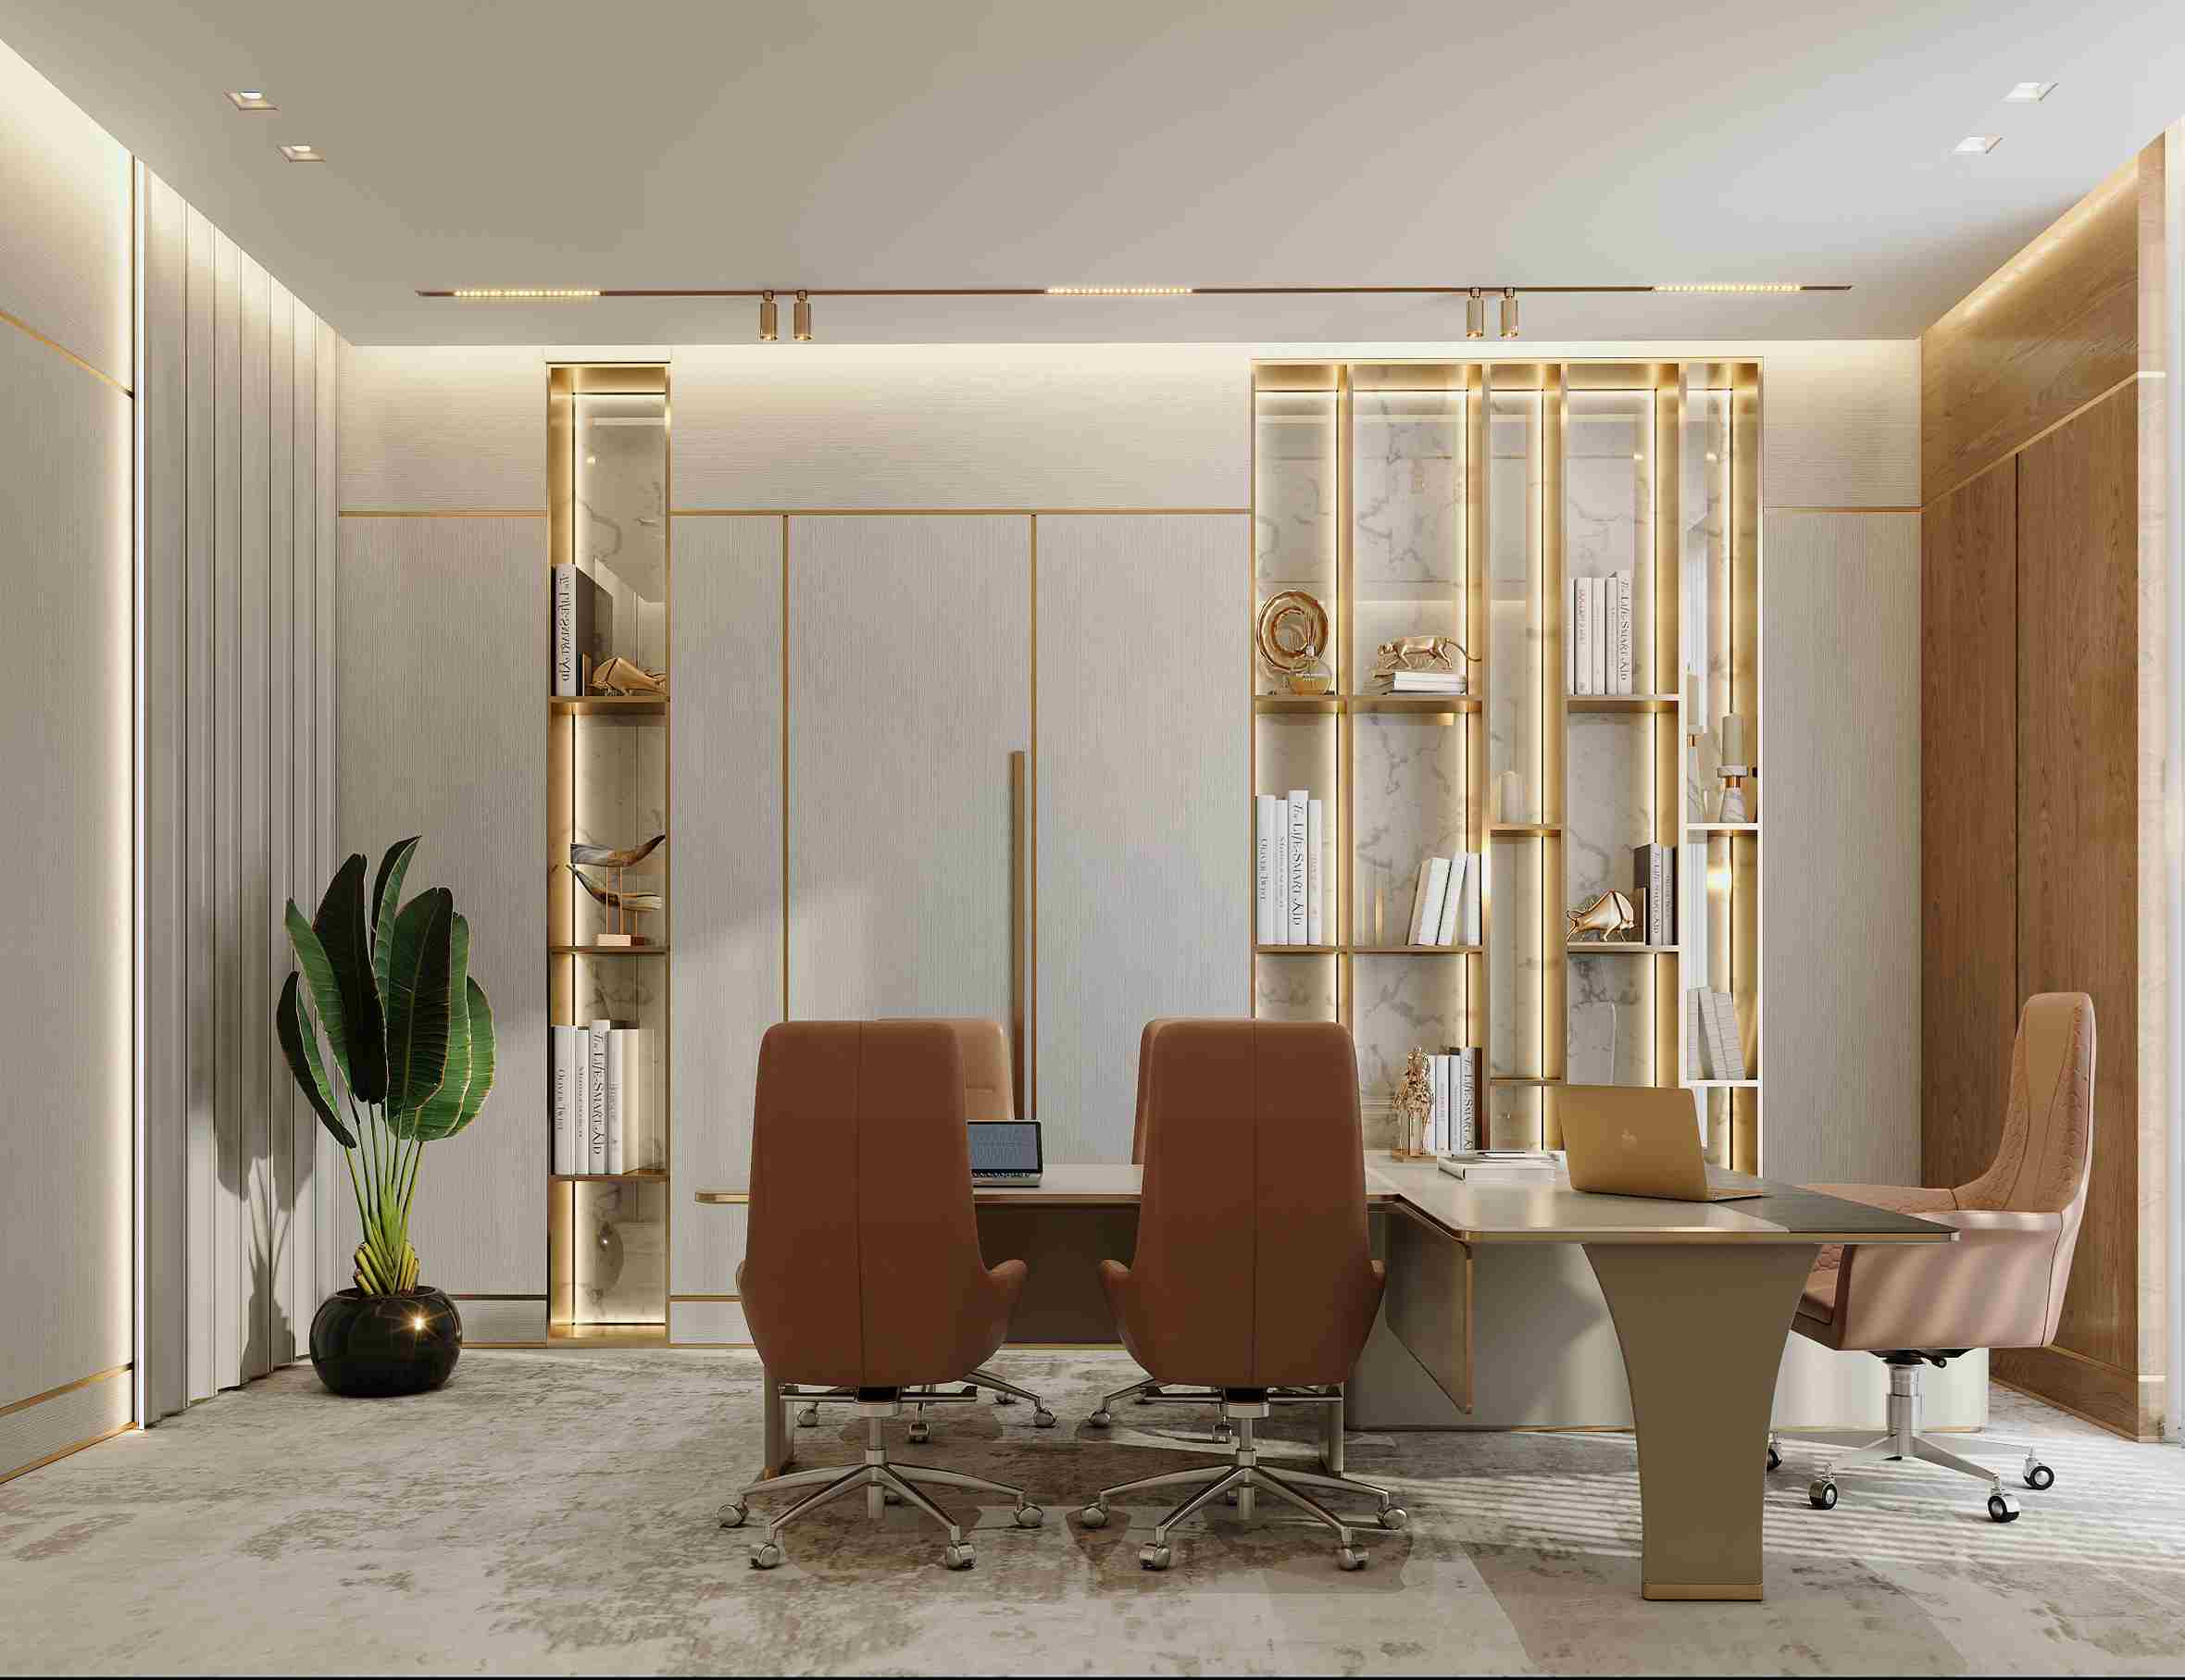 Offices - Spazio Interior Design & Fit Out Company - Dubai